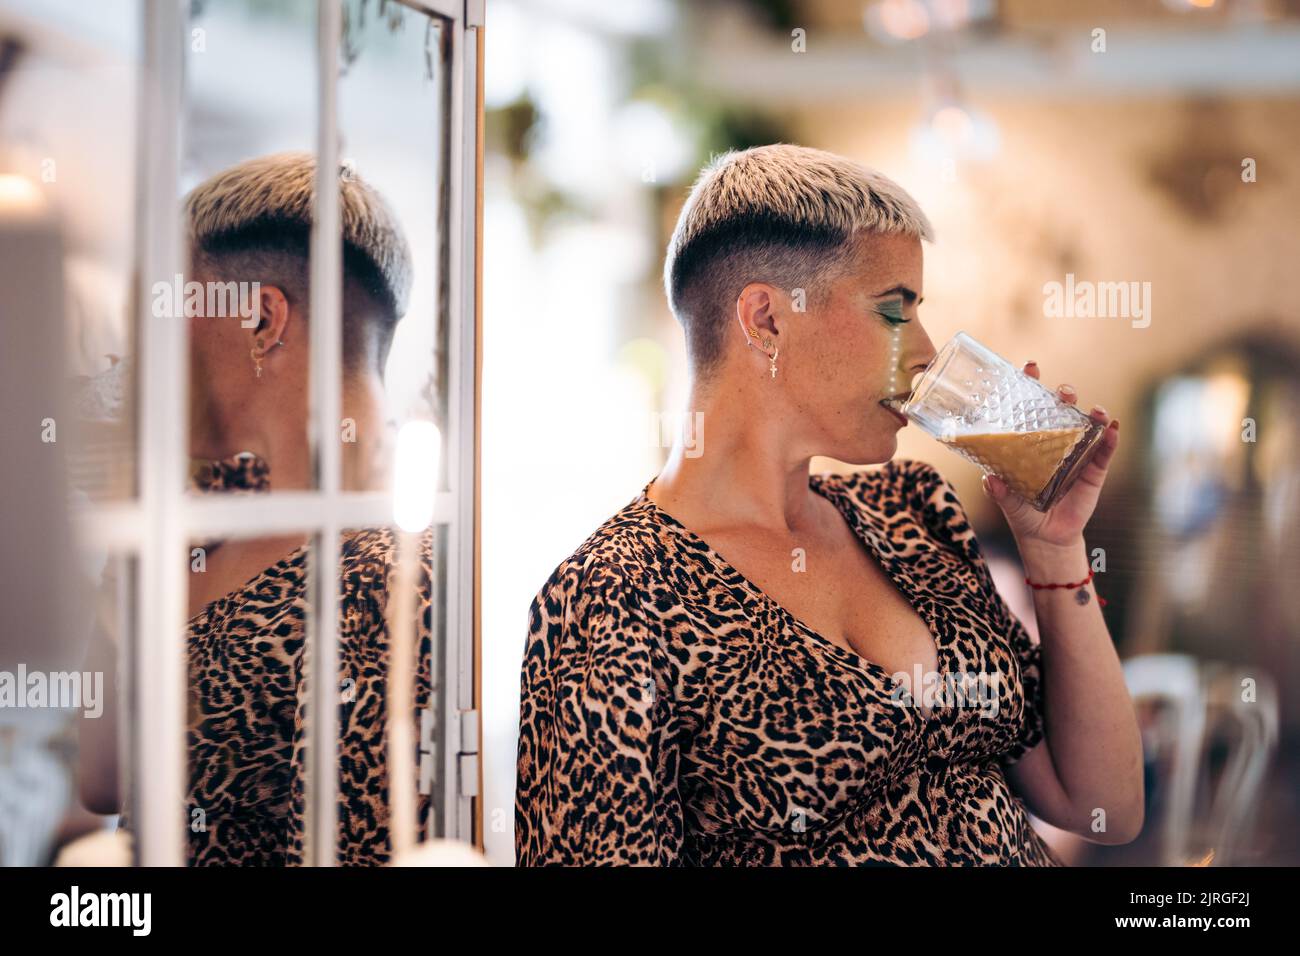 Alternative femme avec les cheveux courts boit une tasse dans un bar et son reflet Banque D'Images